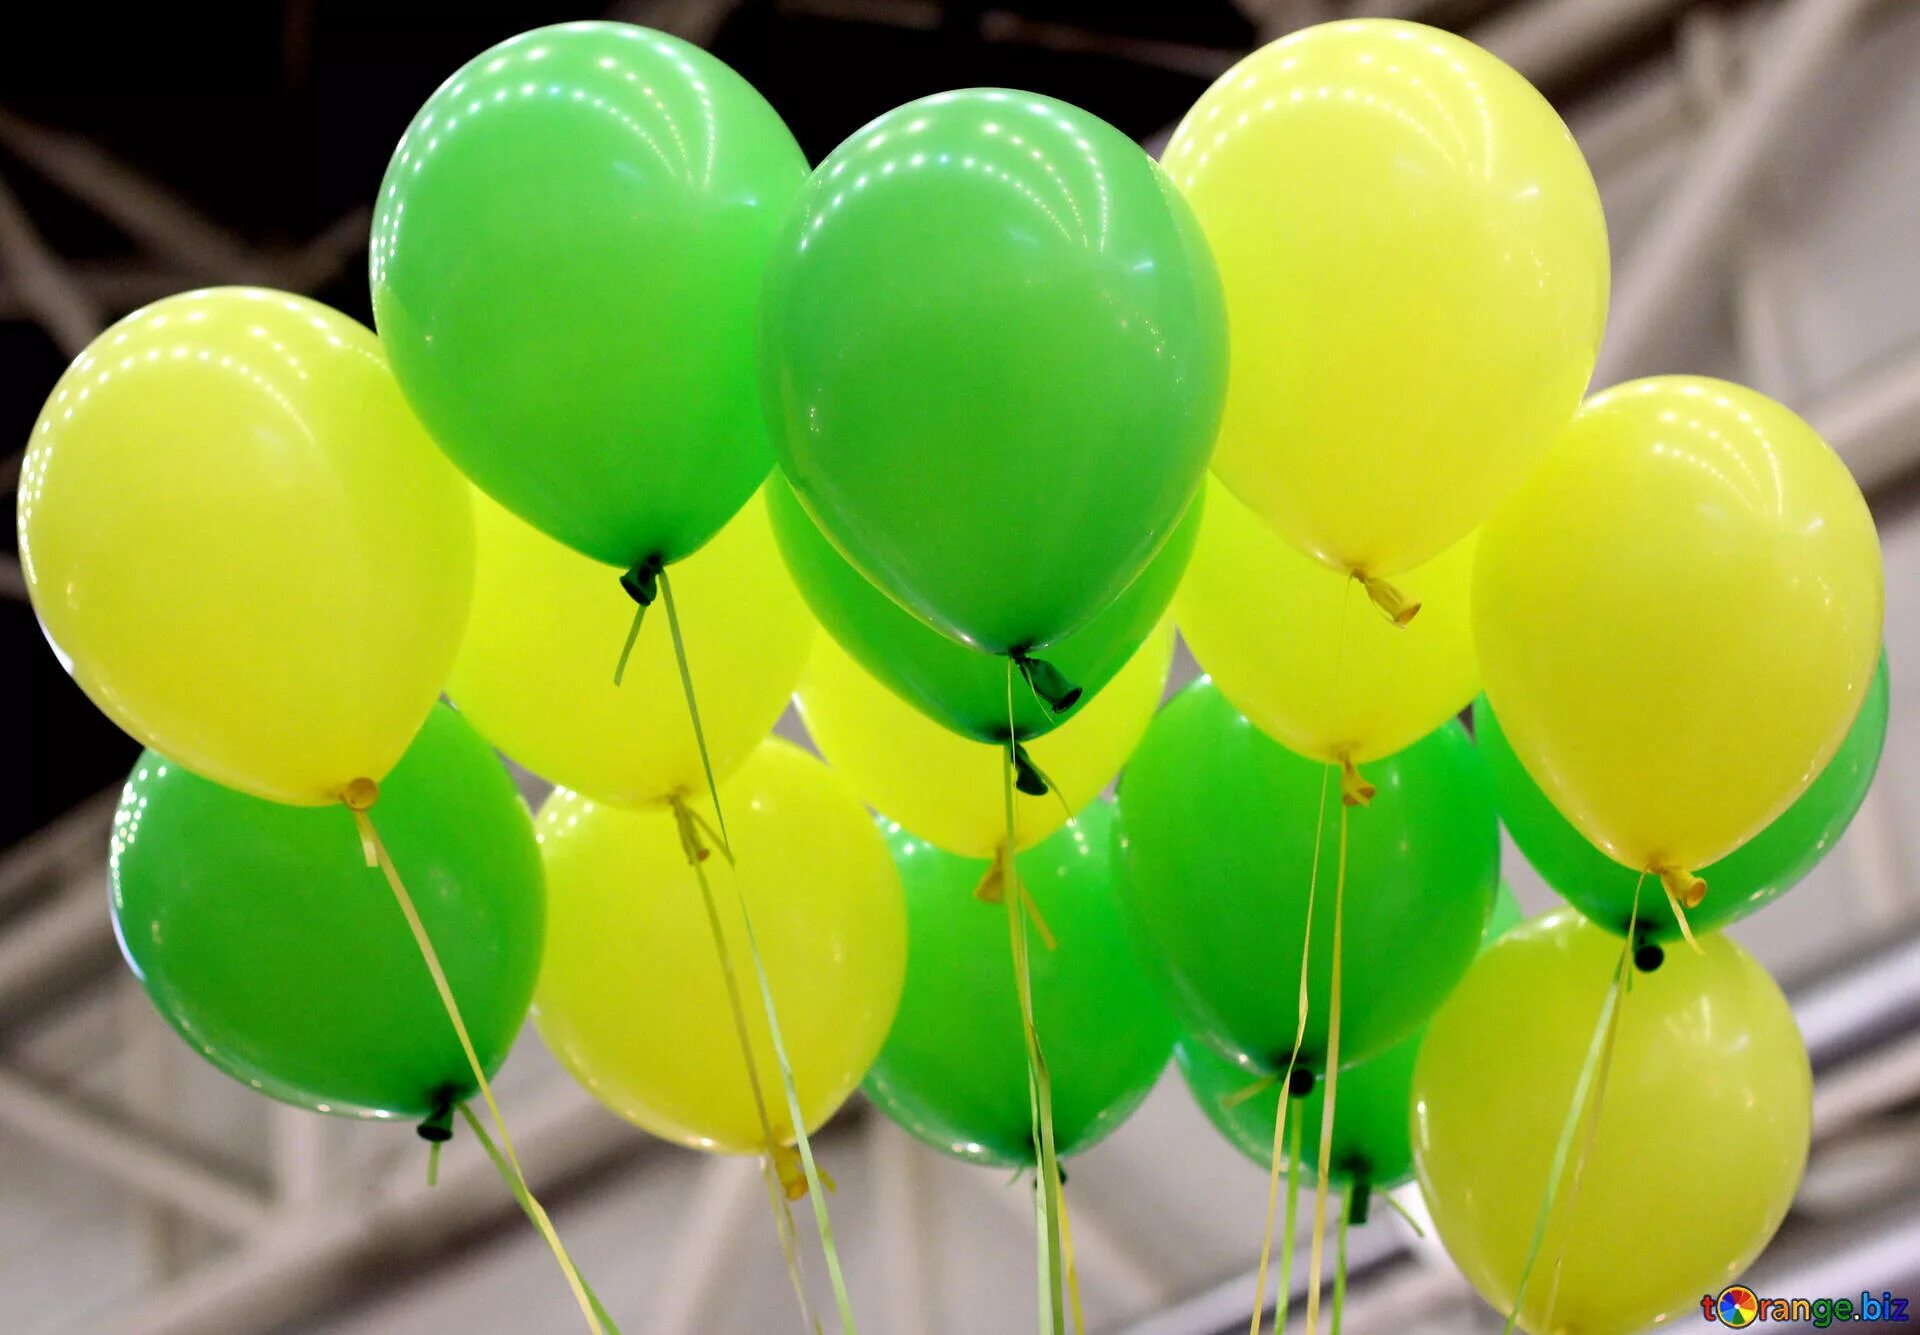 Красные и зеленый шары. Воздушные шары. Зеленый шарик. Шары салатовые и желтые. Воздушные шары желто зеленые.